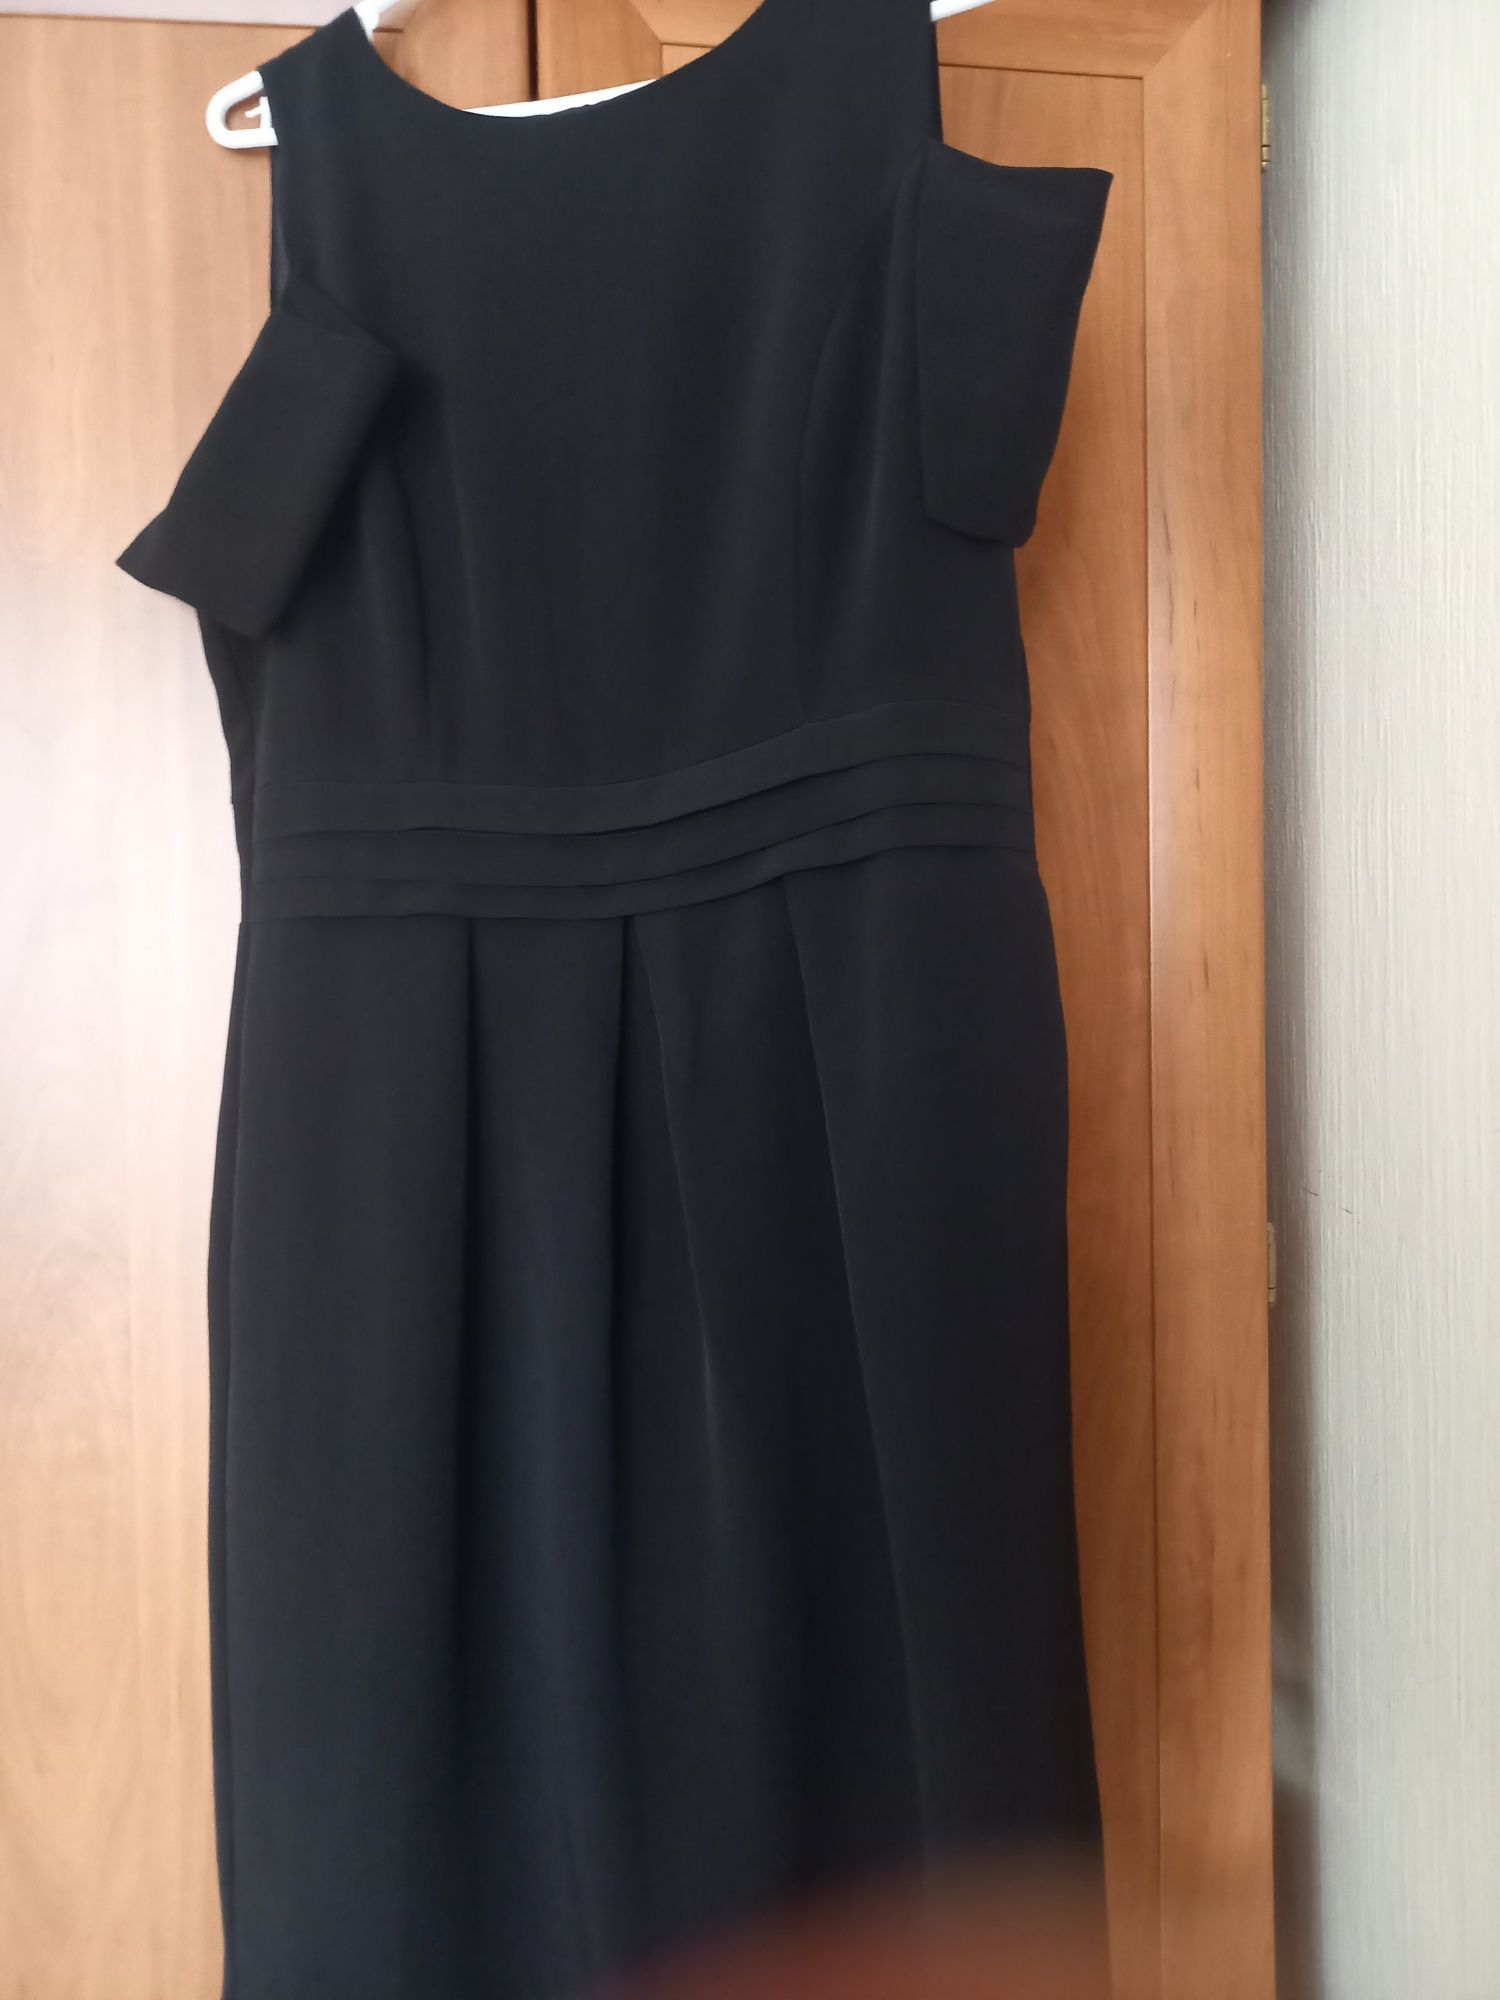 Czarna sukienka z krótkim opuszczanym rękawkiem firmy F&F rozmiar 12